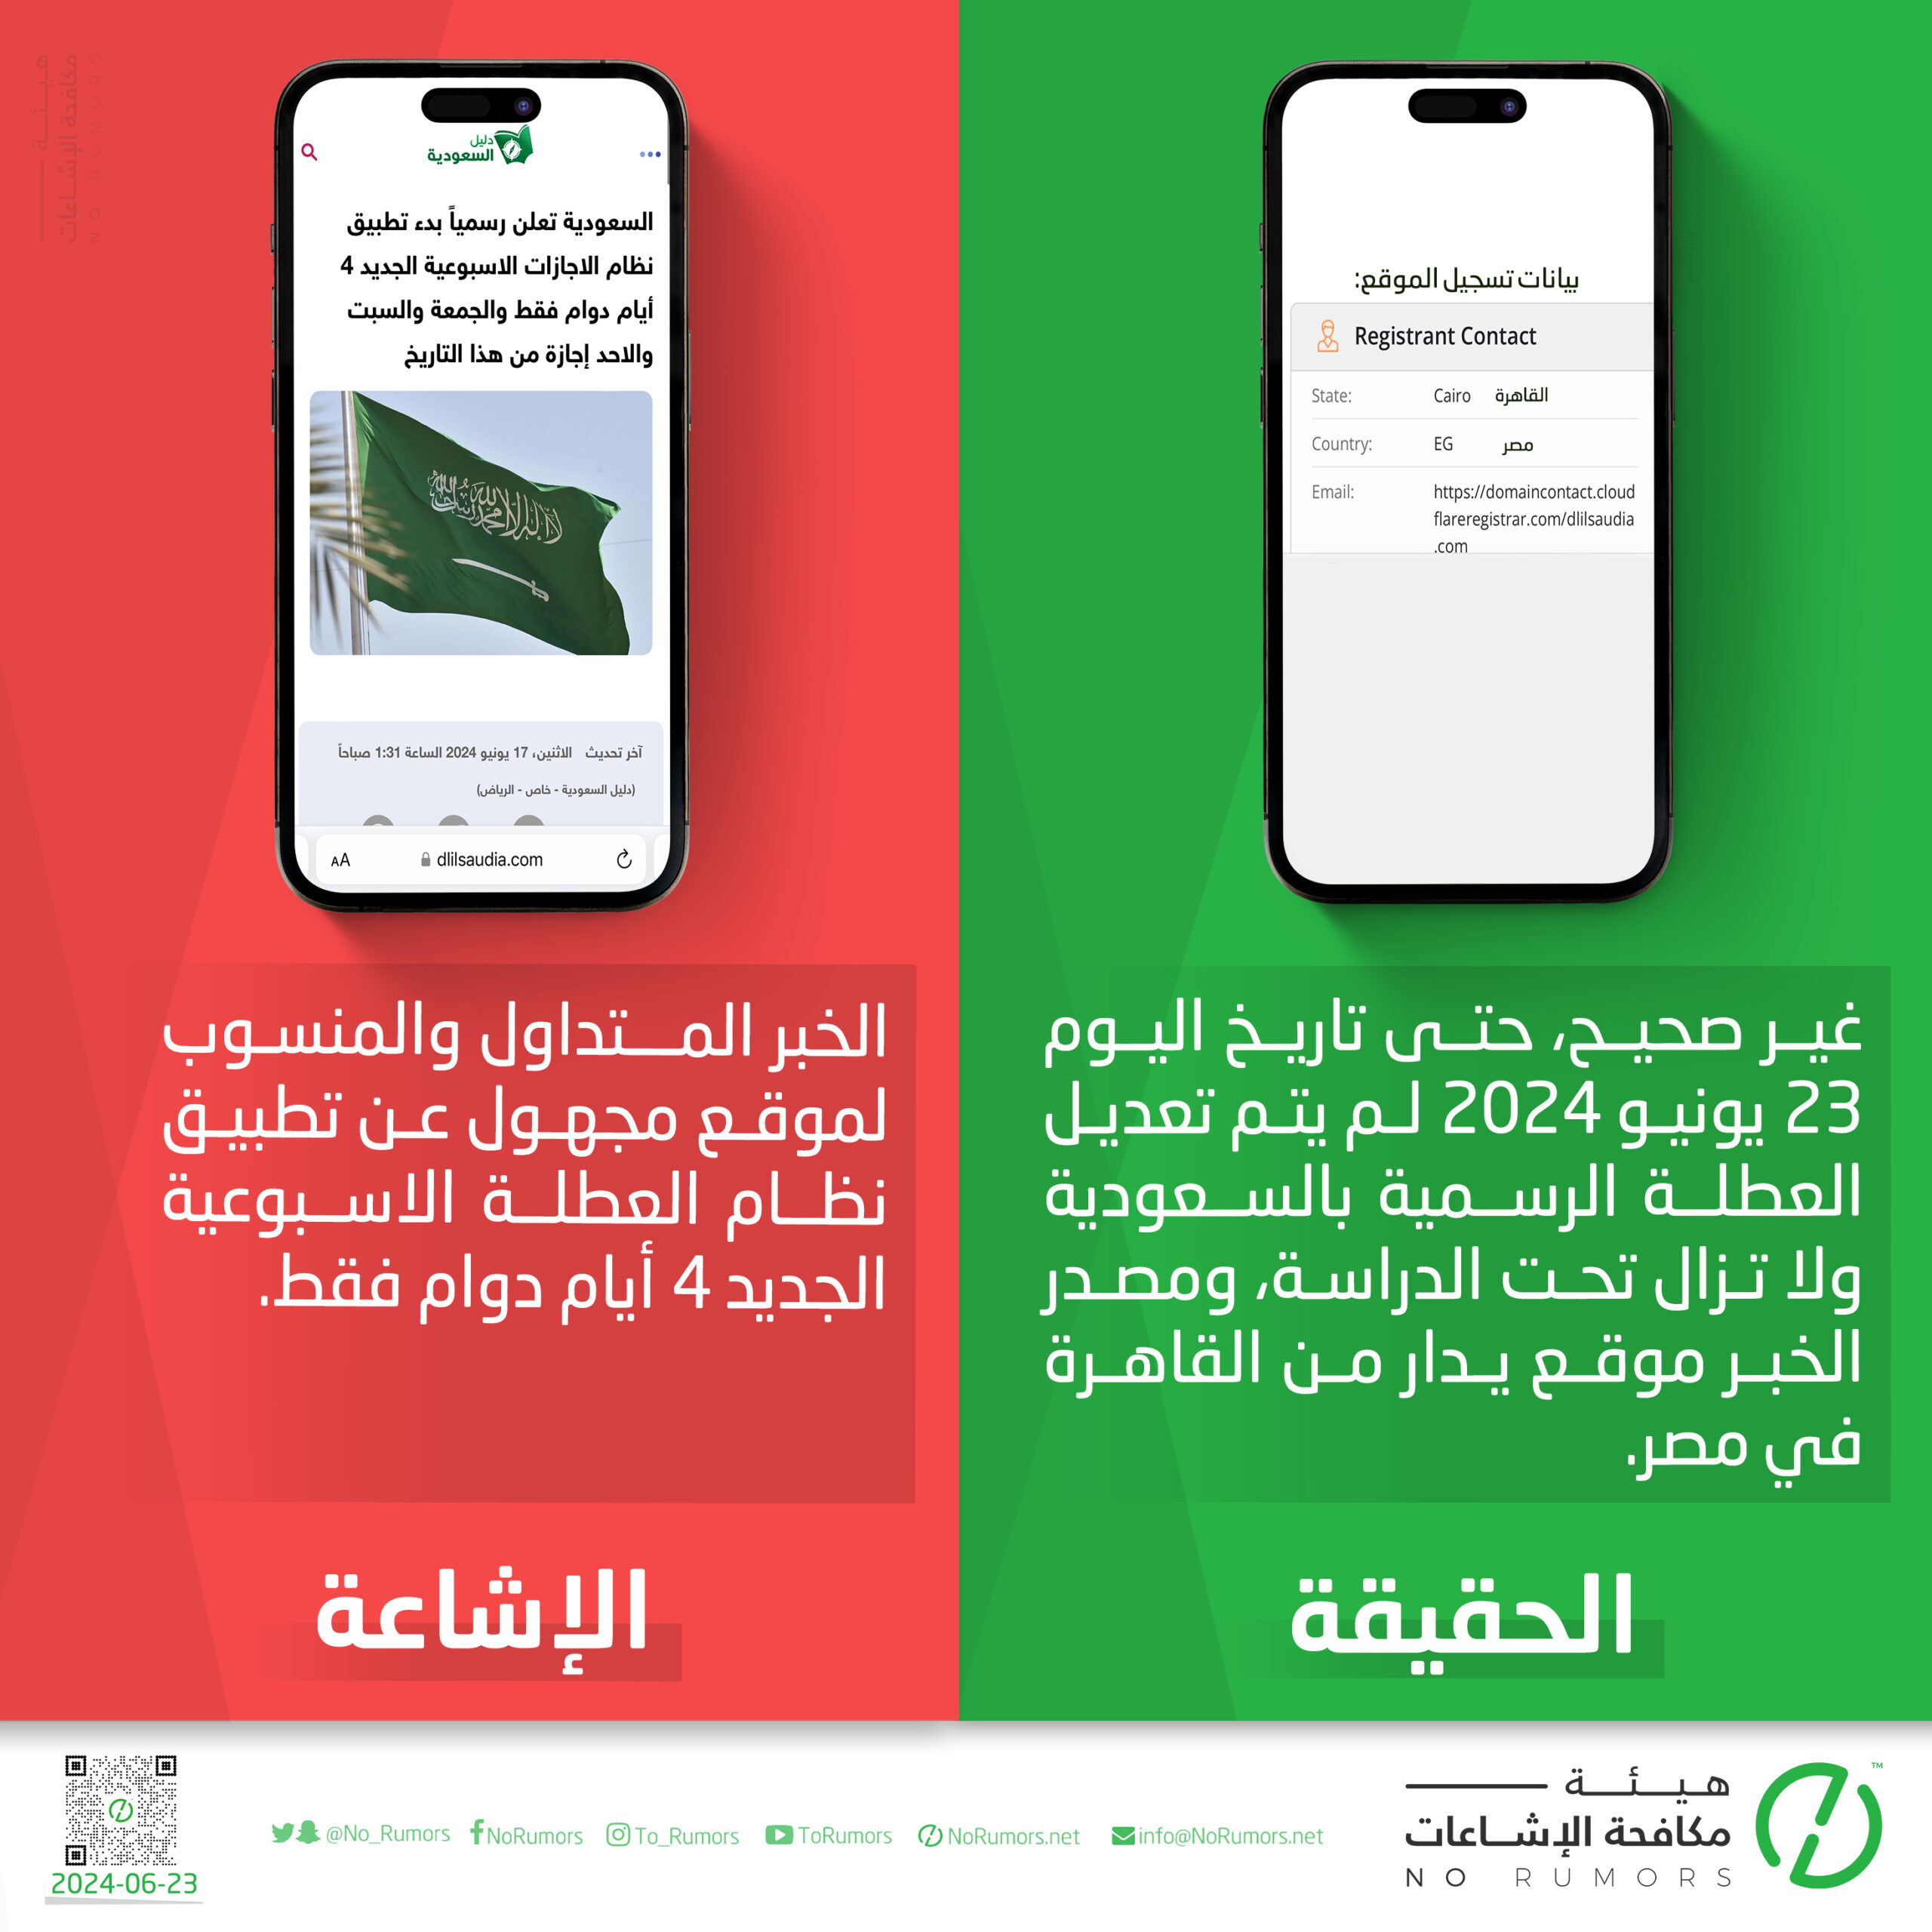 حقيقة الخبر المنسوب لموقع مجهول عن تطبيق نظام العطلة الاسبوعية الجديد 4 أيام دوام في السعودية